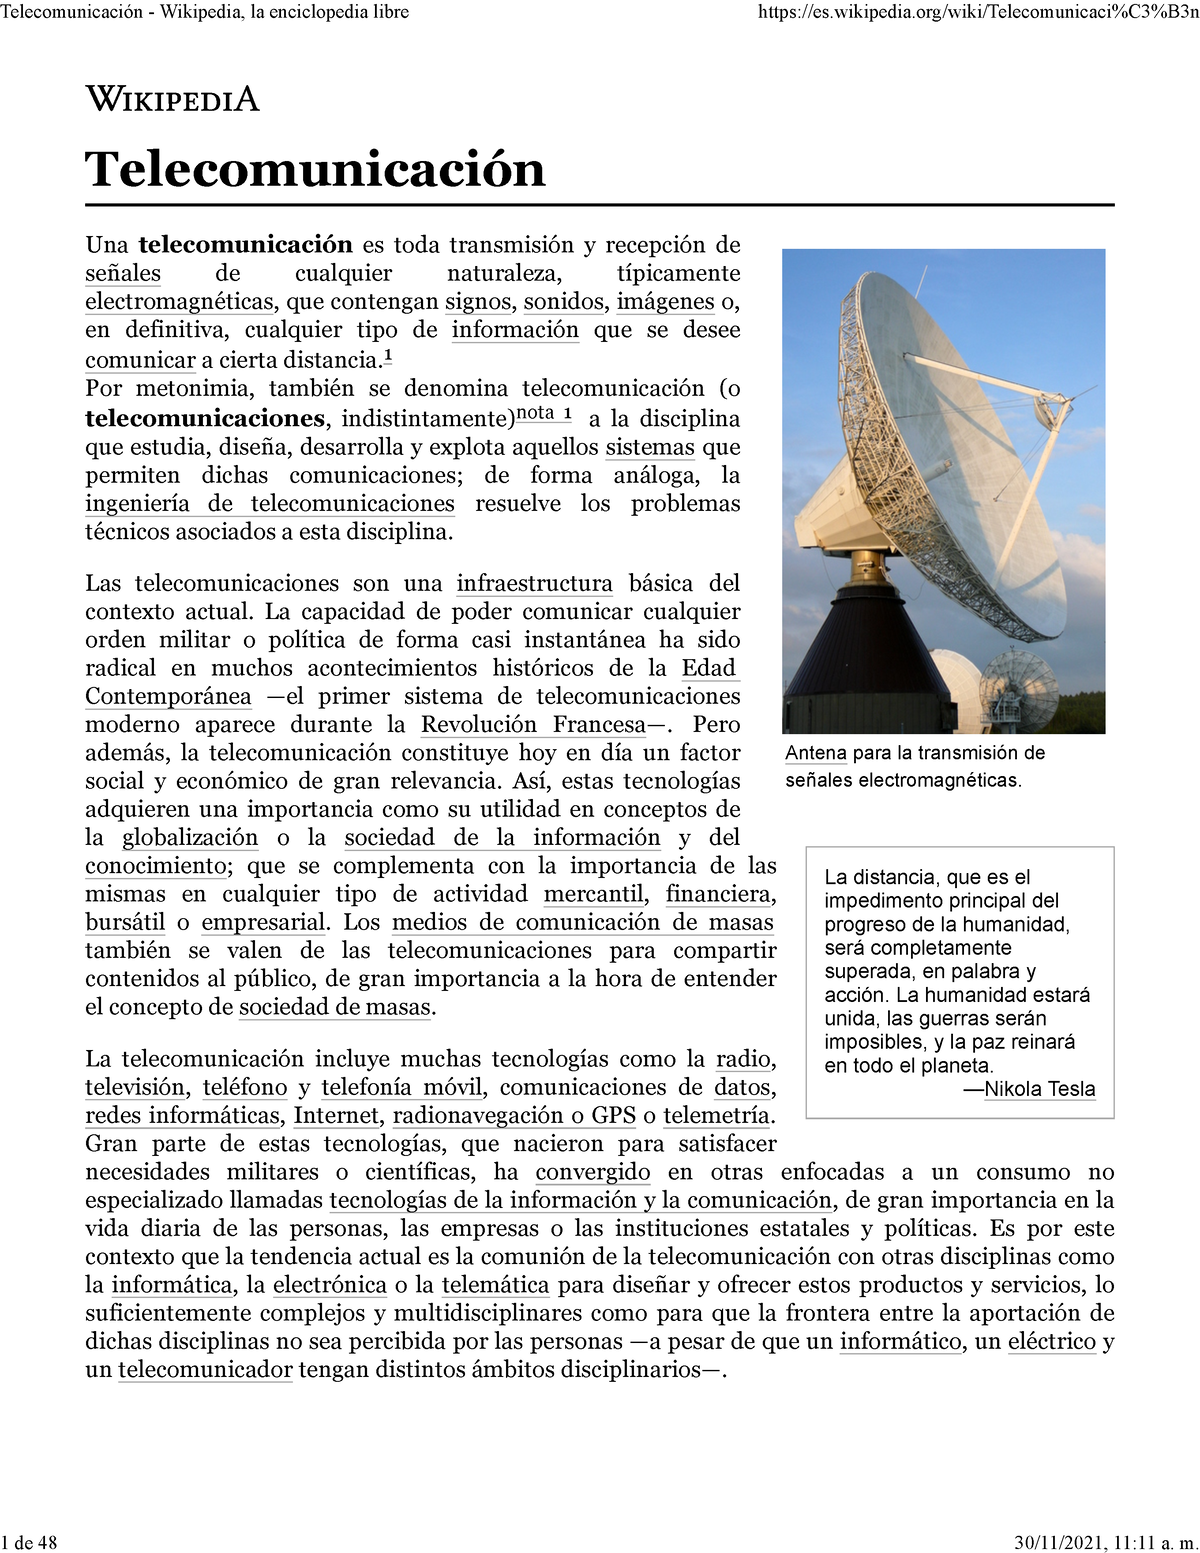 Telecomunicación - Wikipedia, la enciclopedia libre - Antena para